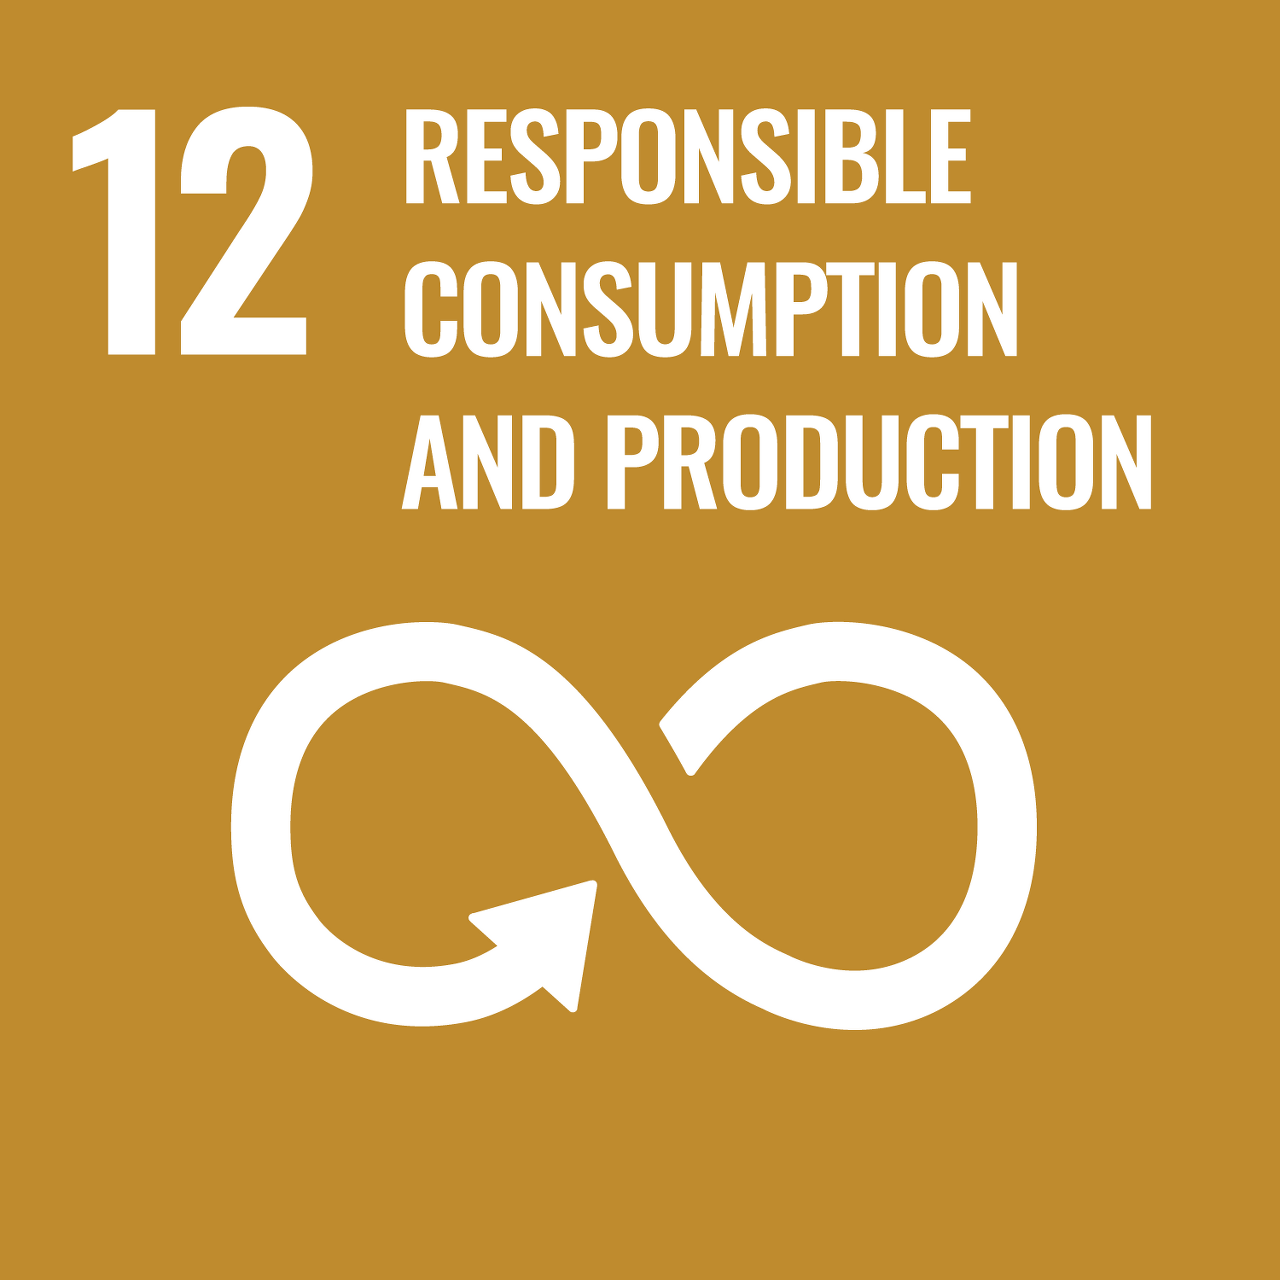 책임감있는 소비와 생산 - 지속가능한 소비와 생산 양식의 보장